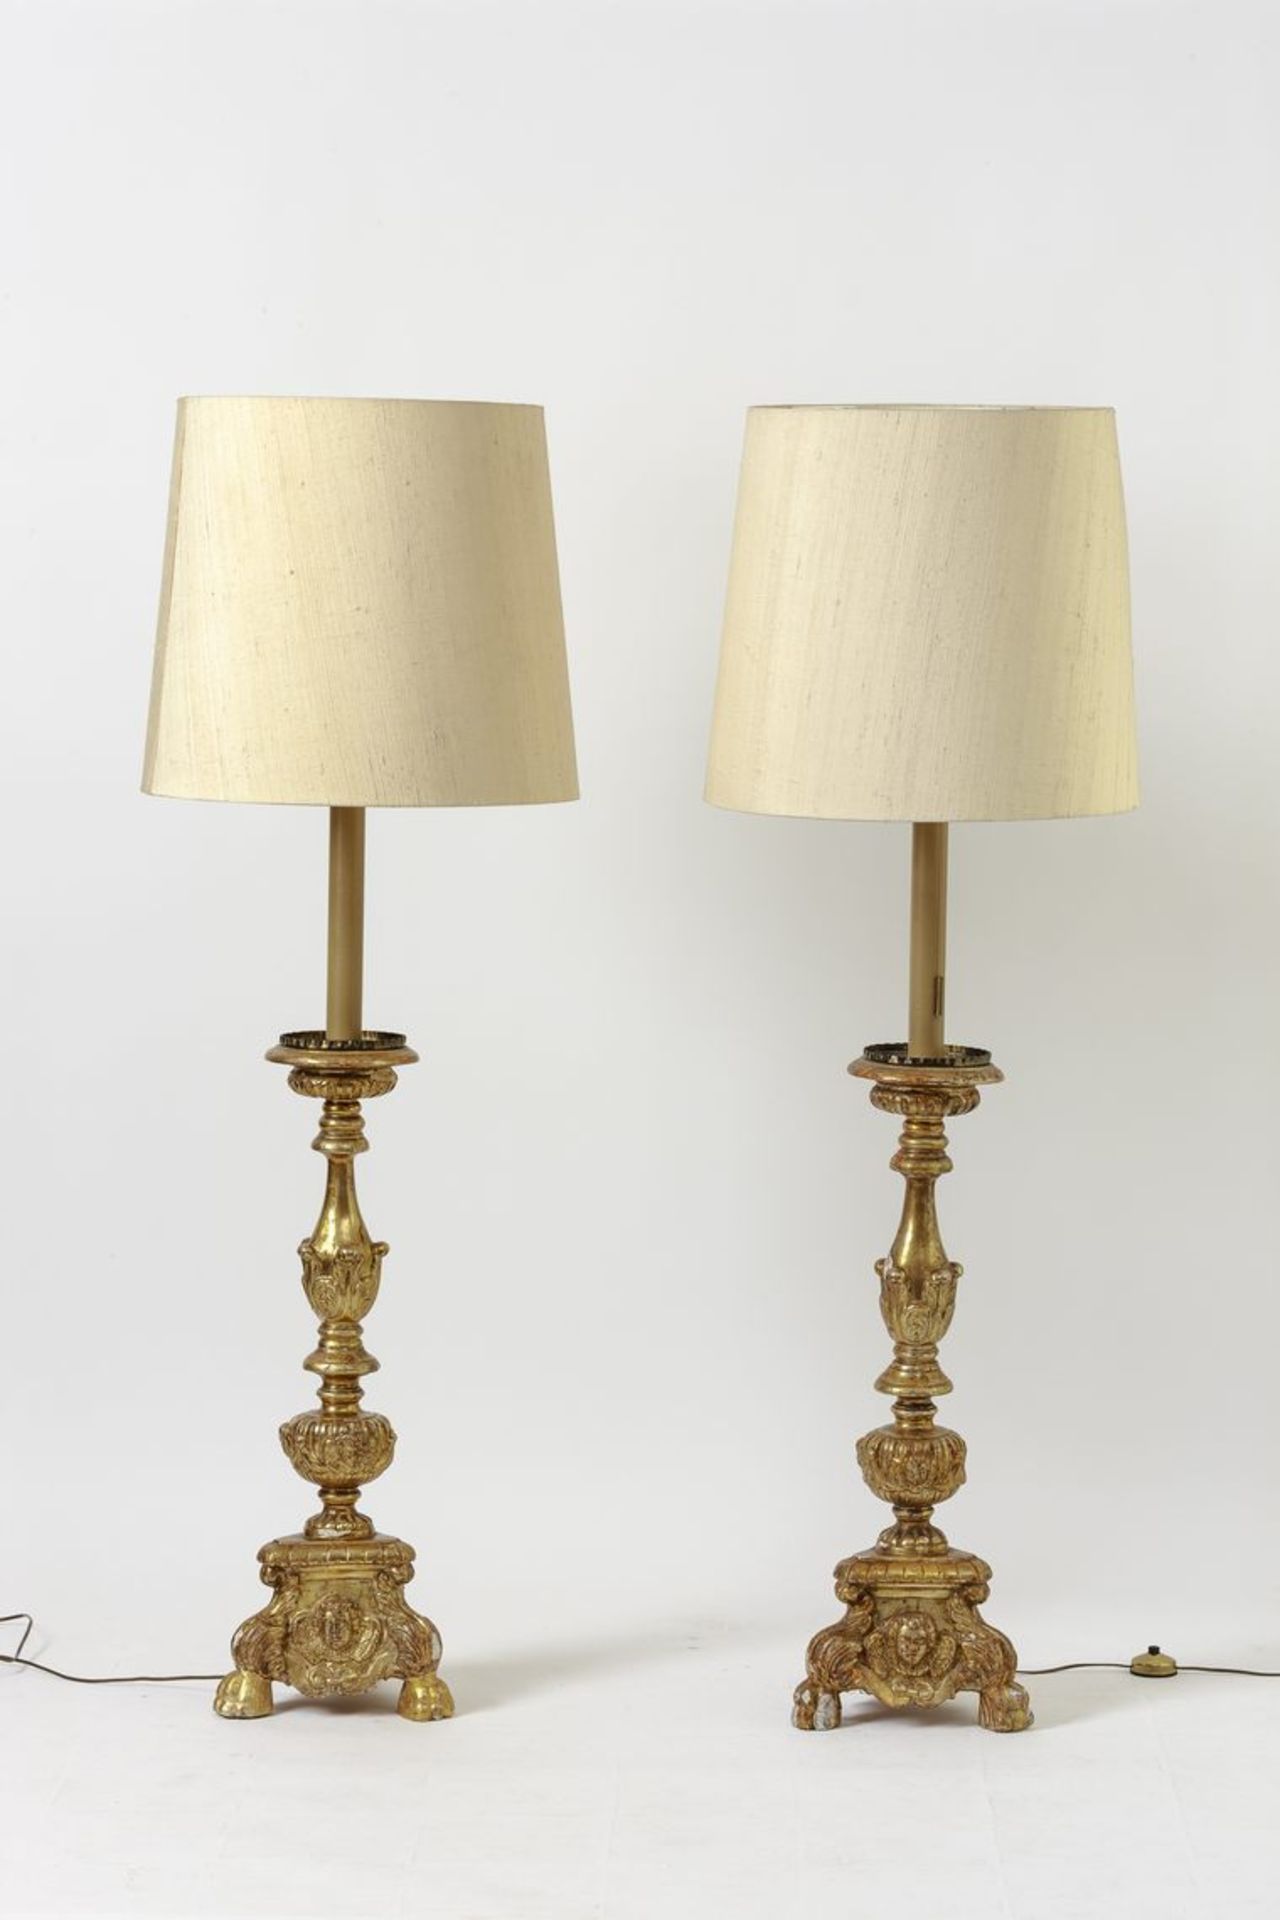 Paar Barock-AltarleuchterHolz, goldgefasst. Umbau als Stehlampe. 18. Jh. H. 87 cm.